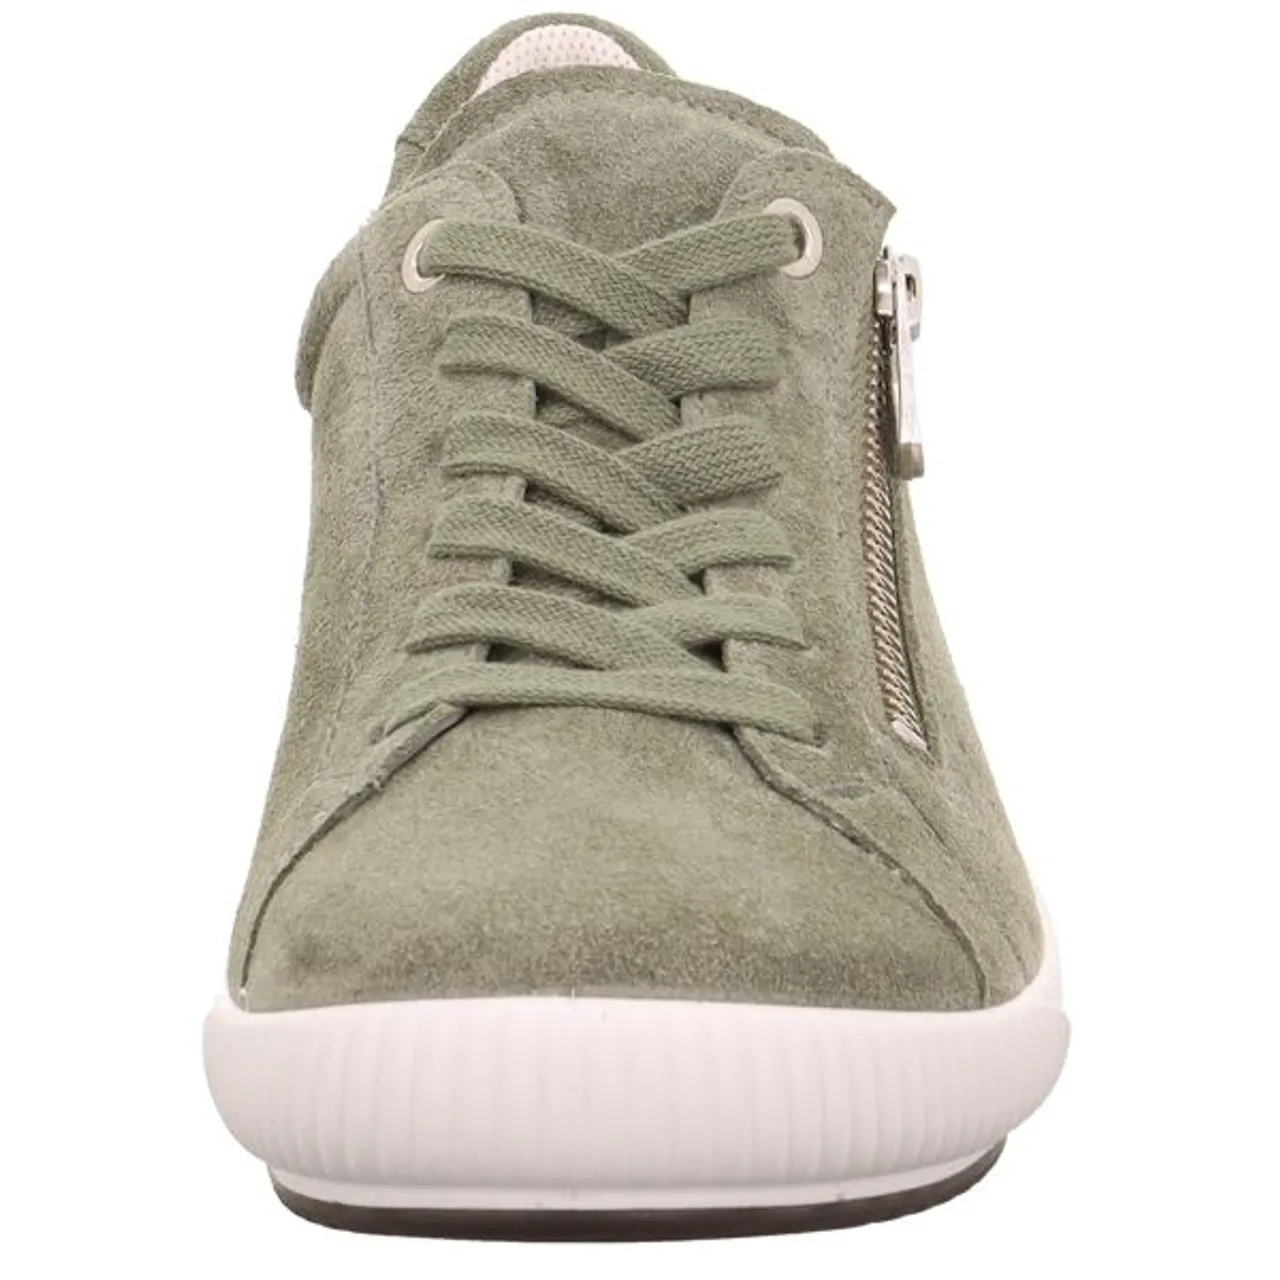 Sneaker LEGERO "TANARO 5.0" Gr. 41, grün (oliv) Damen Schuhe Sneaker Komfortschuh, Freizeitschuh, Schnürschuh mit Reißverschluss